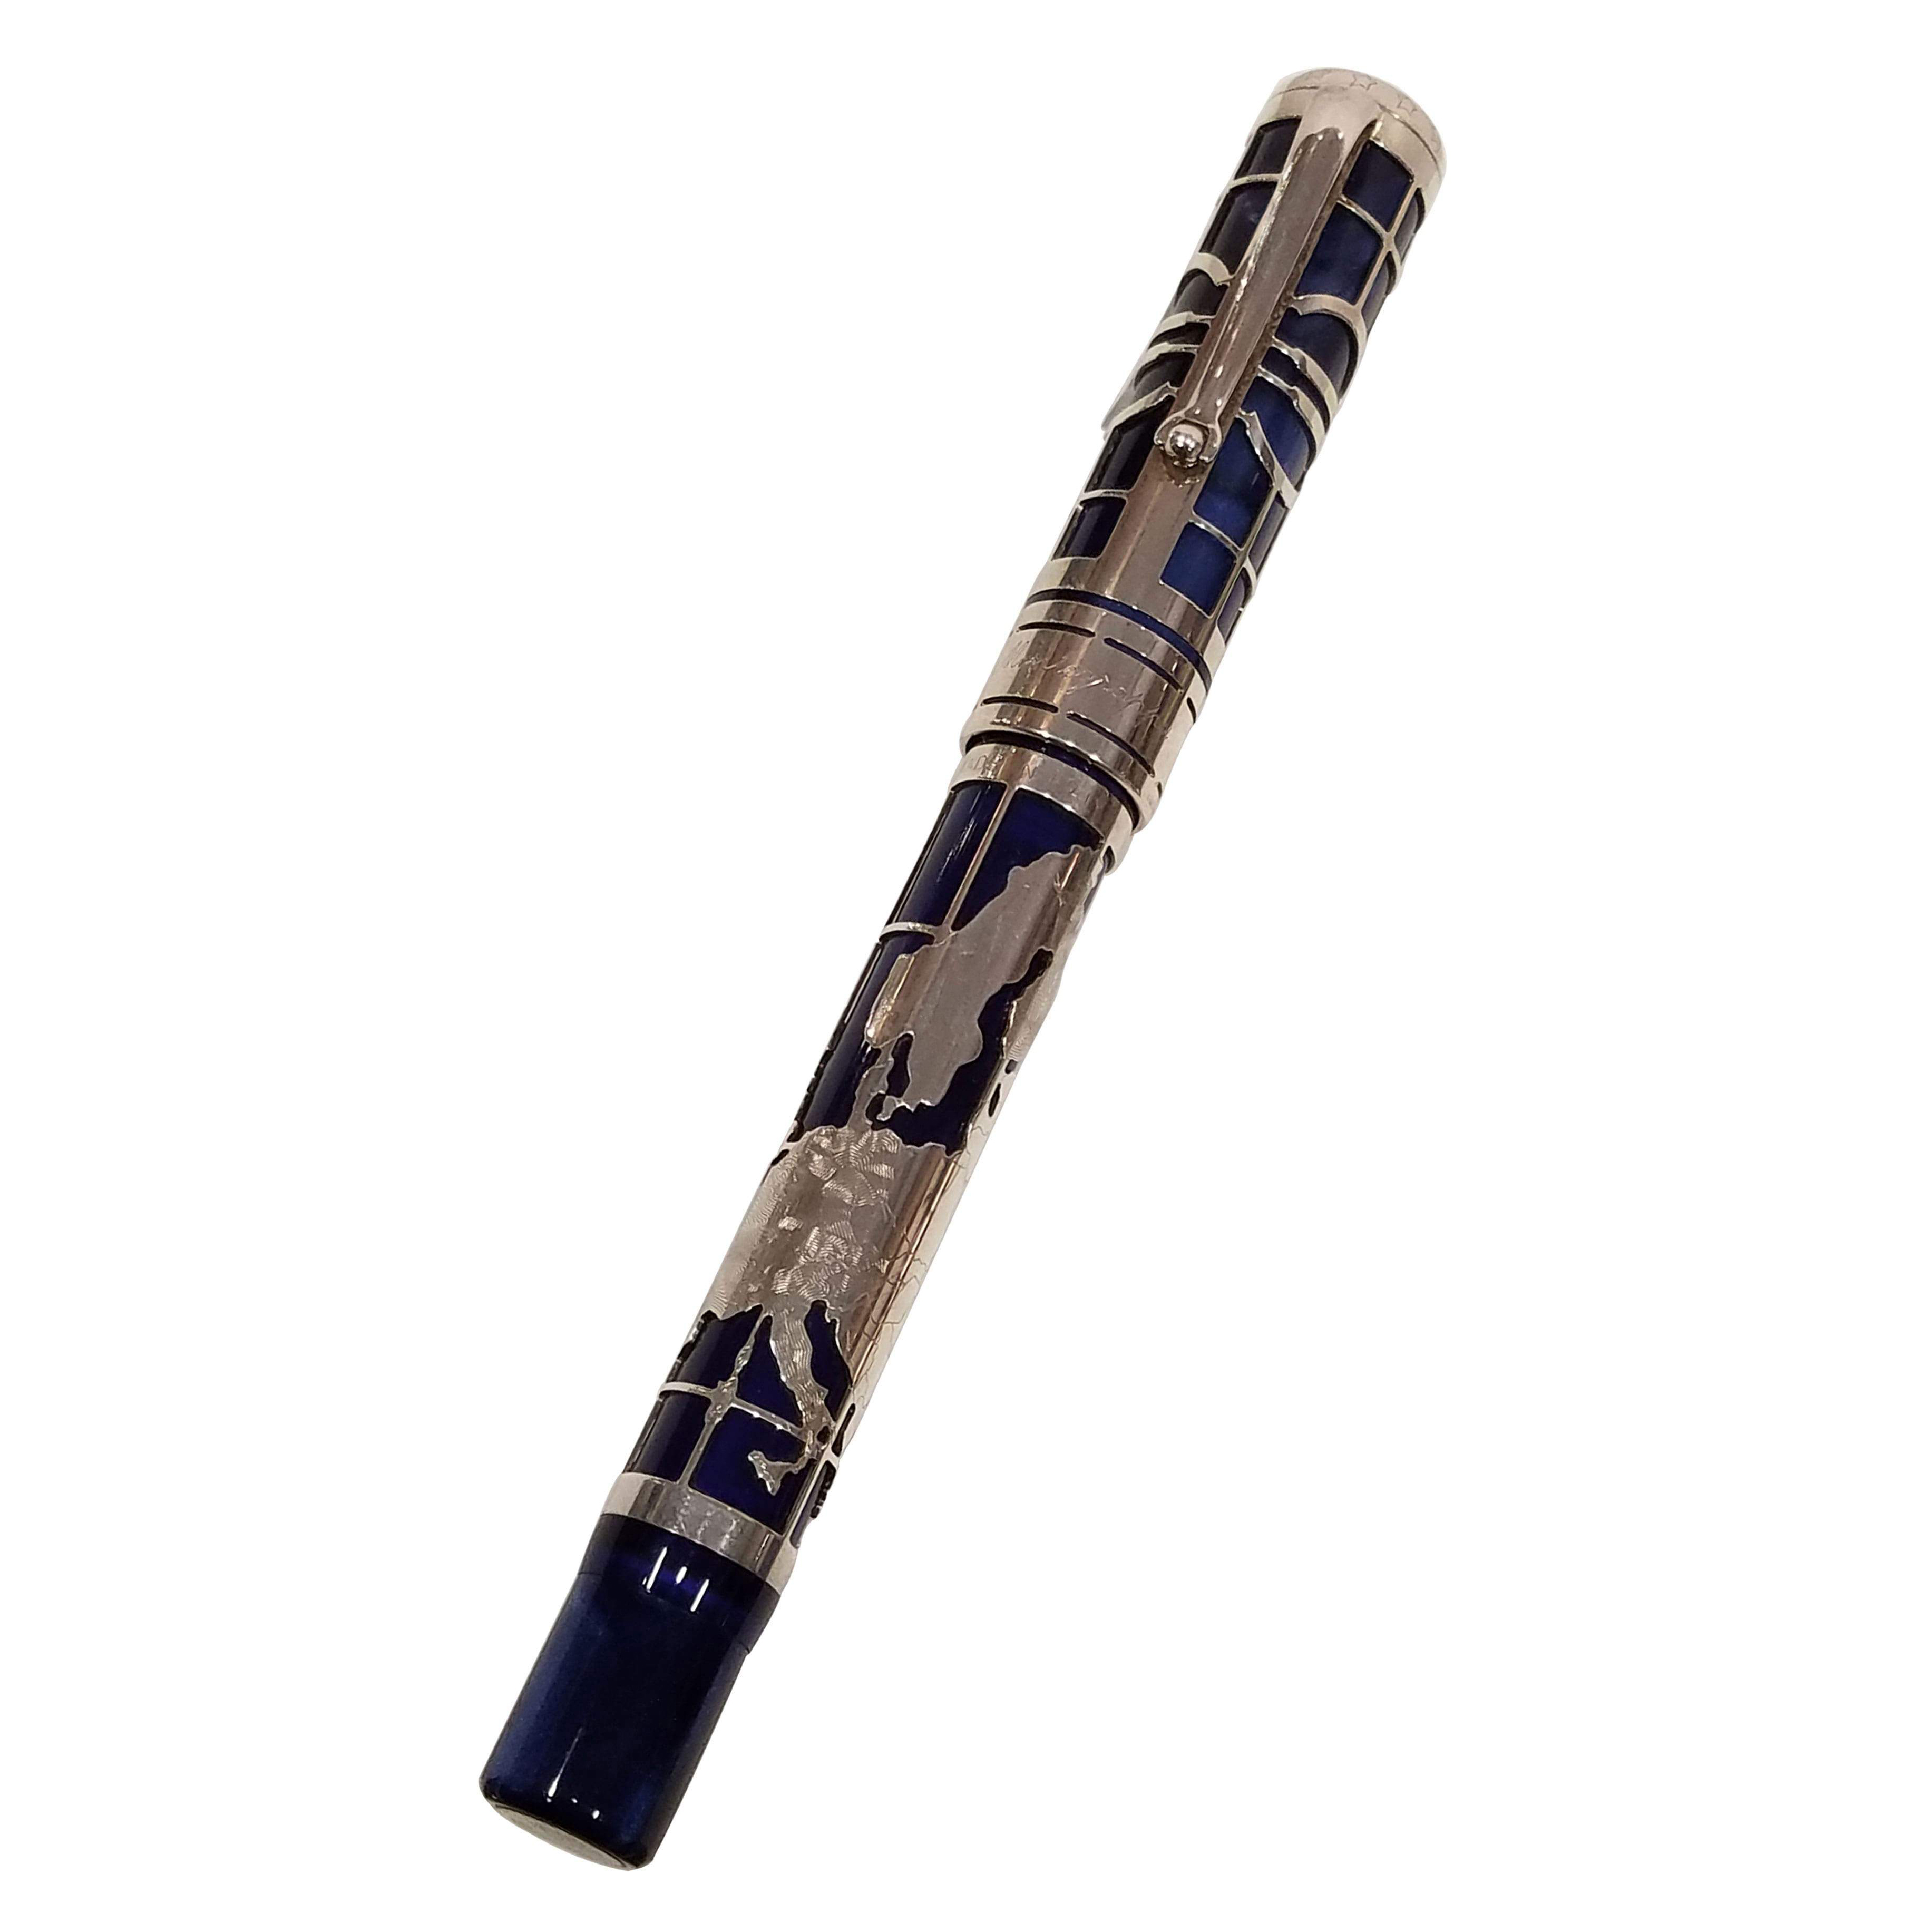 Перо ручки традиционно выполнено из 18-каратного золота и покрыто платиной.